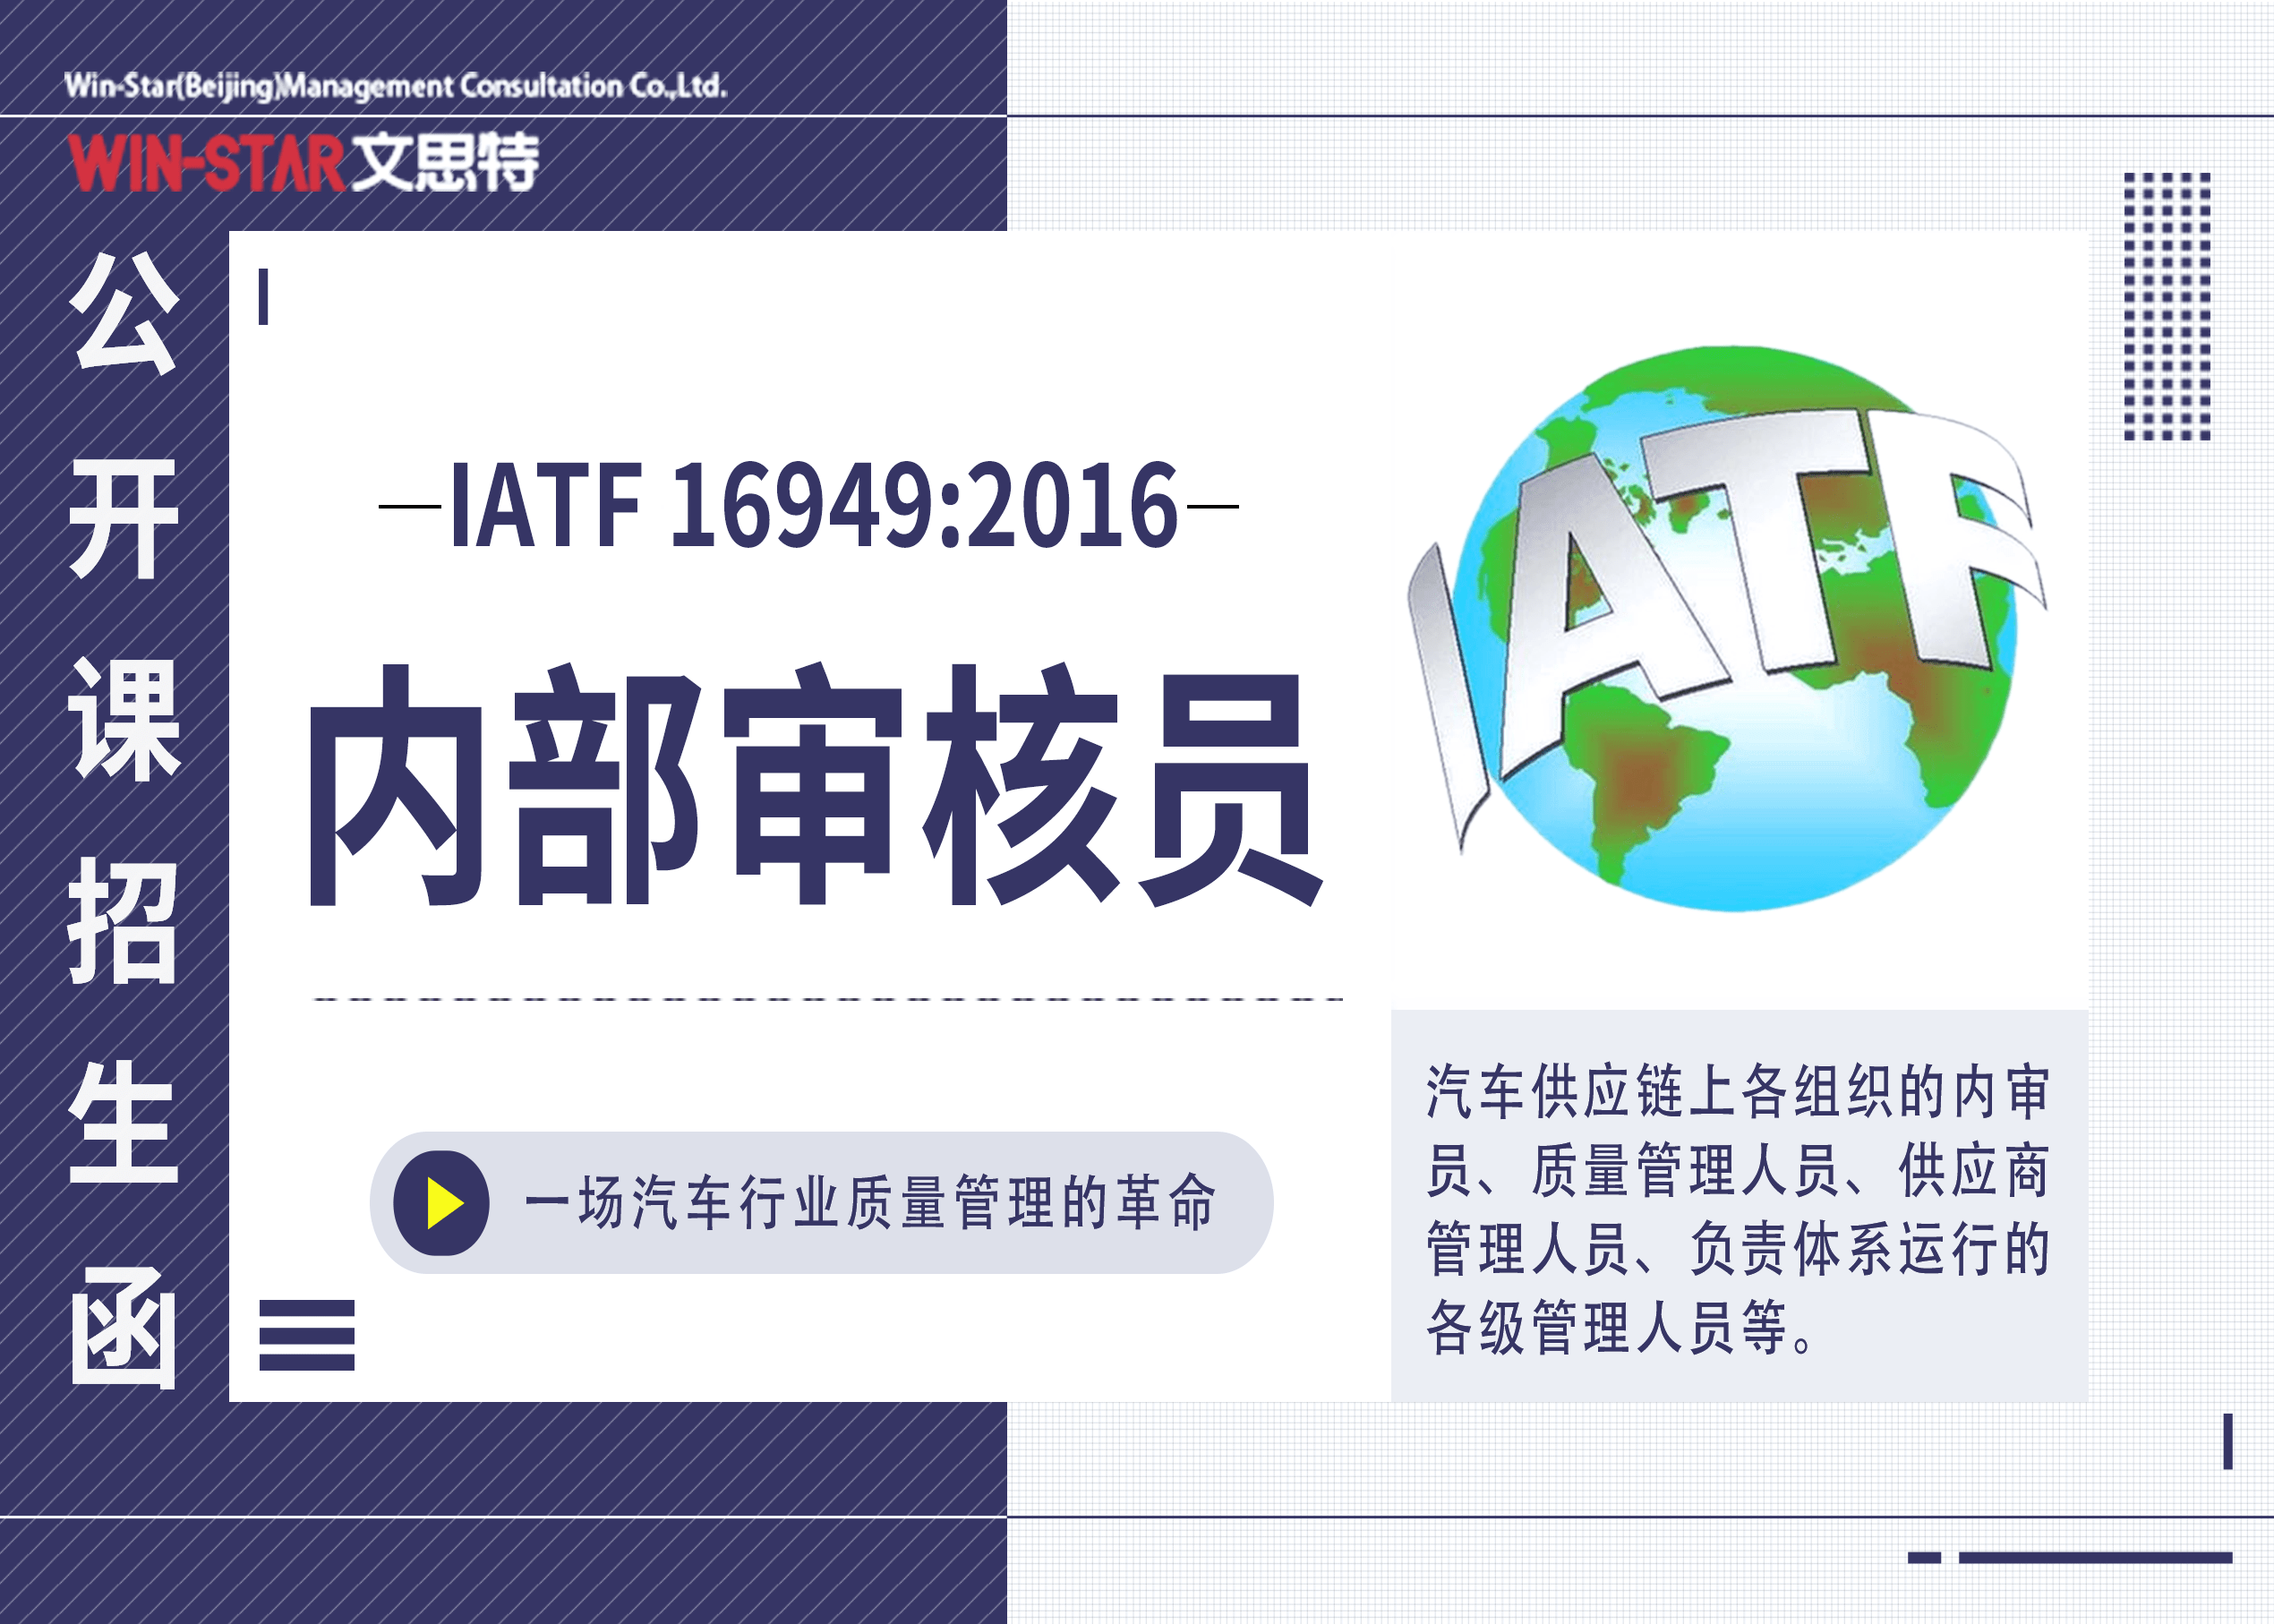 苹果教材电子版
:《IATF 16949:2016内部审核员》公开课